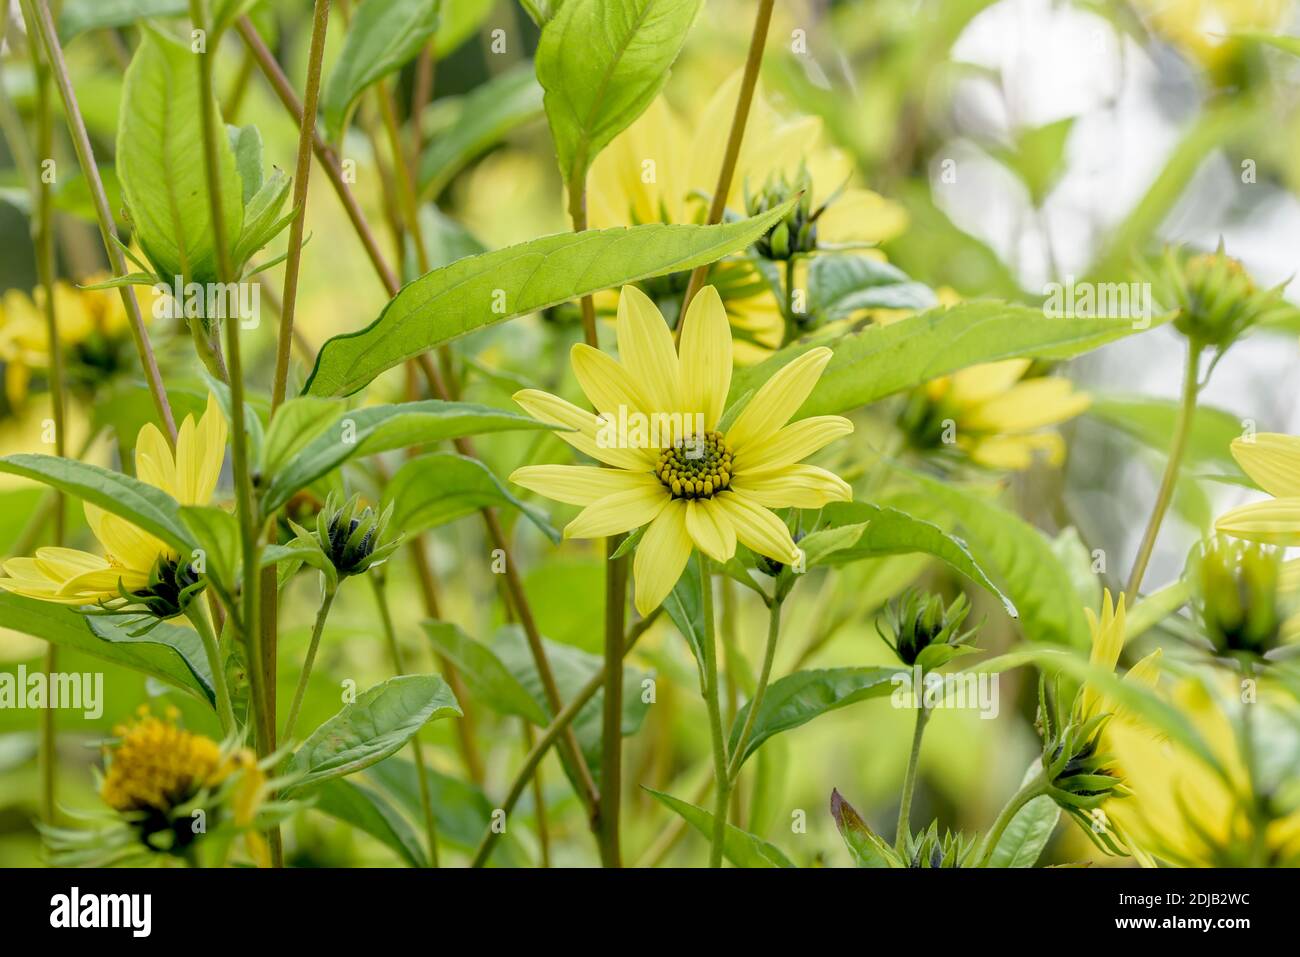 Kleinköpfige Sonnenblume (Helianthus 'Lemon Queen') Banque D'Images